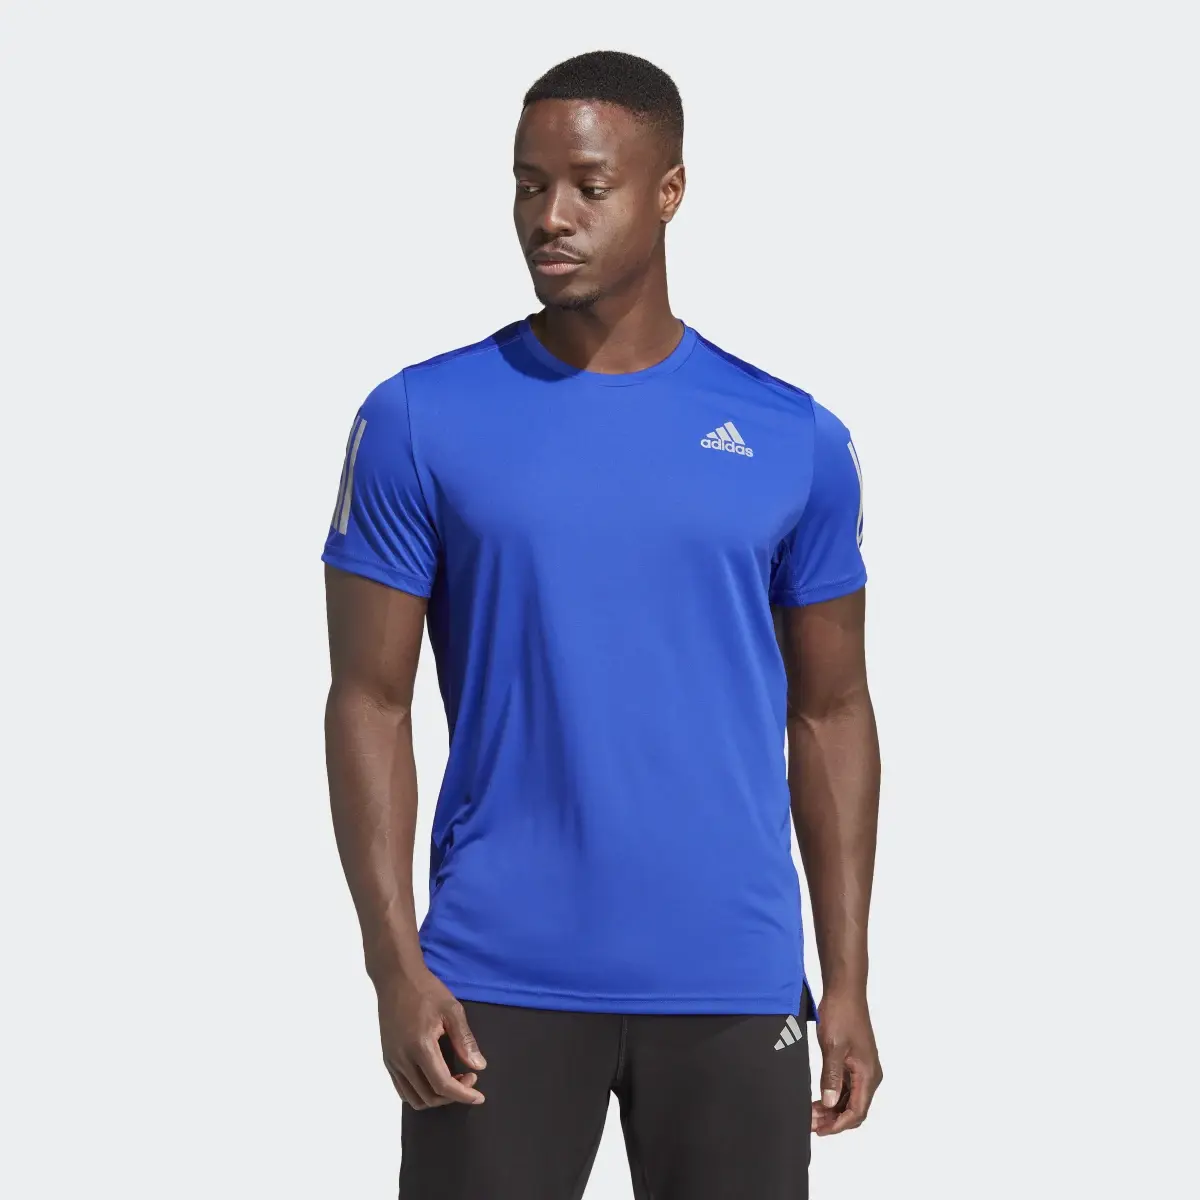 Adidas T-shirt Own the Run. 2